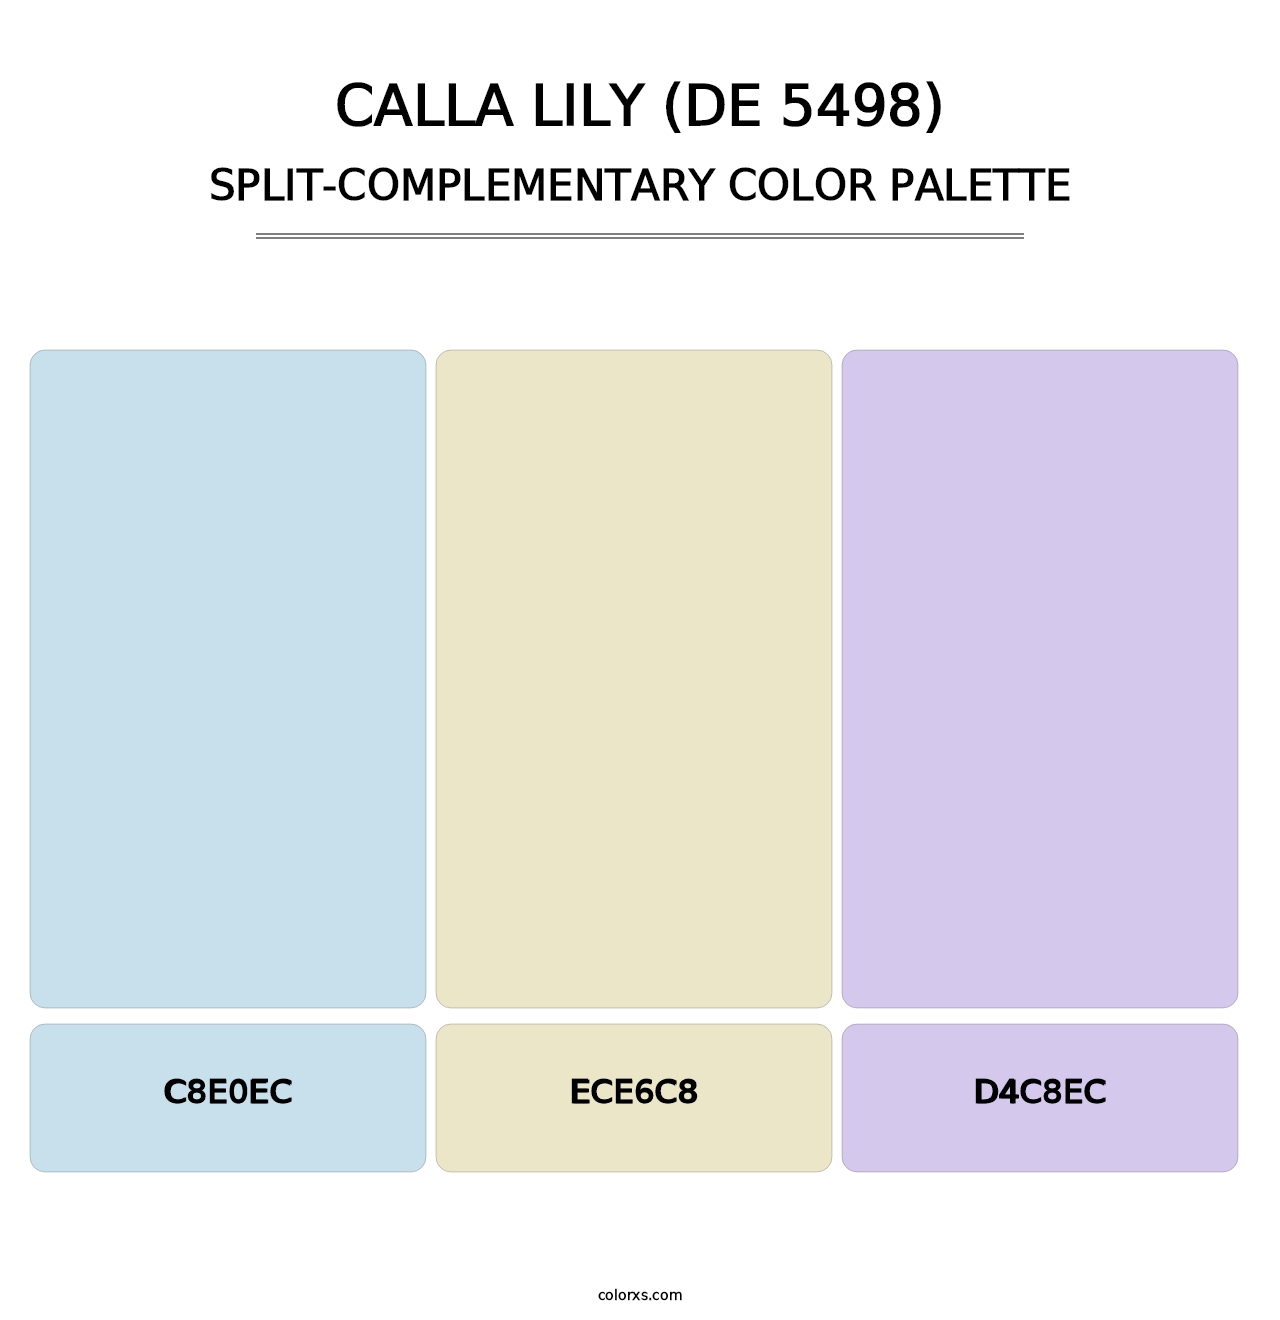 Calla Lily (DE 5498) - Split-Complementary Color Palette